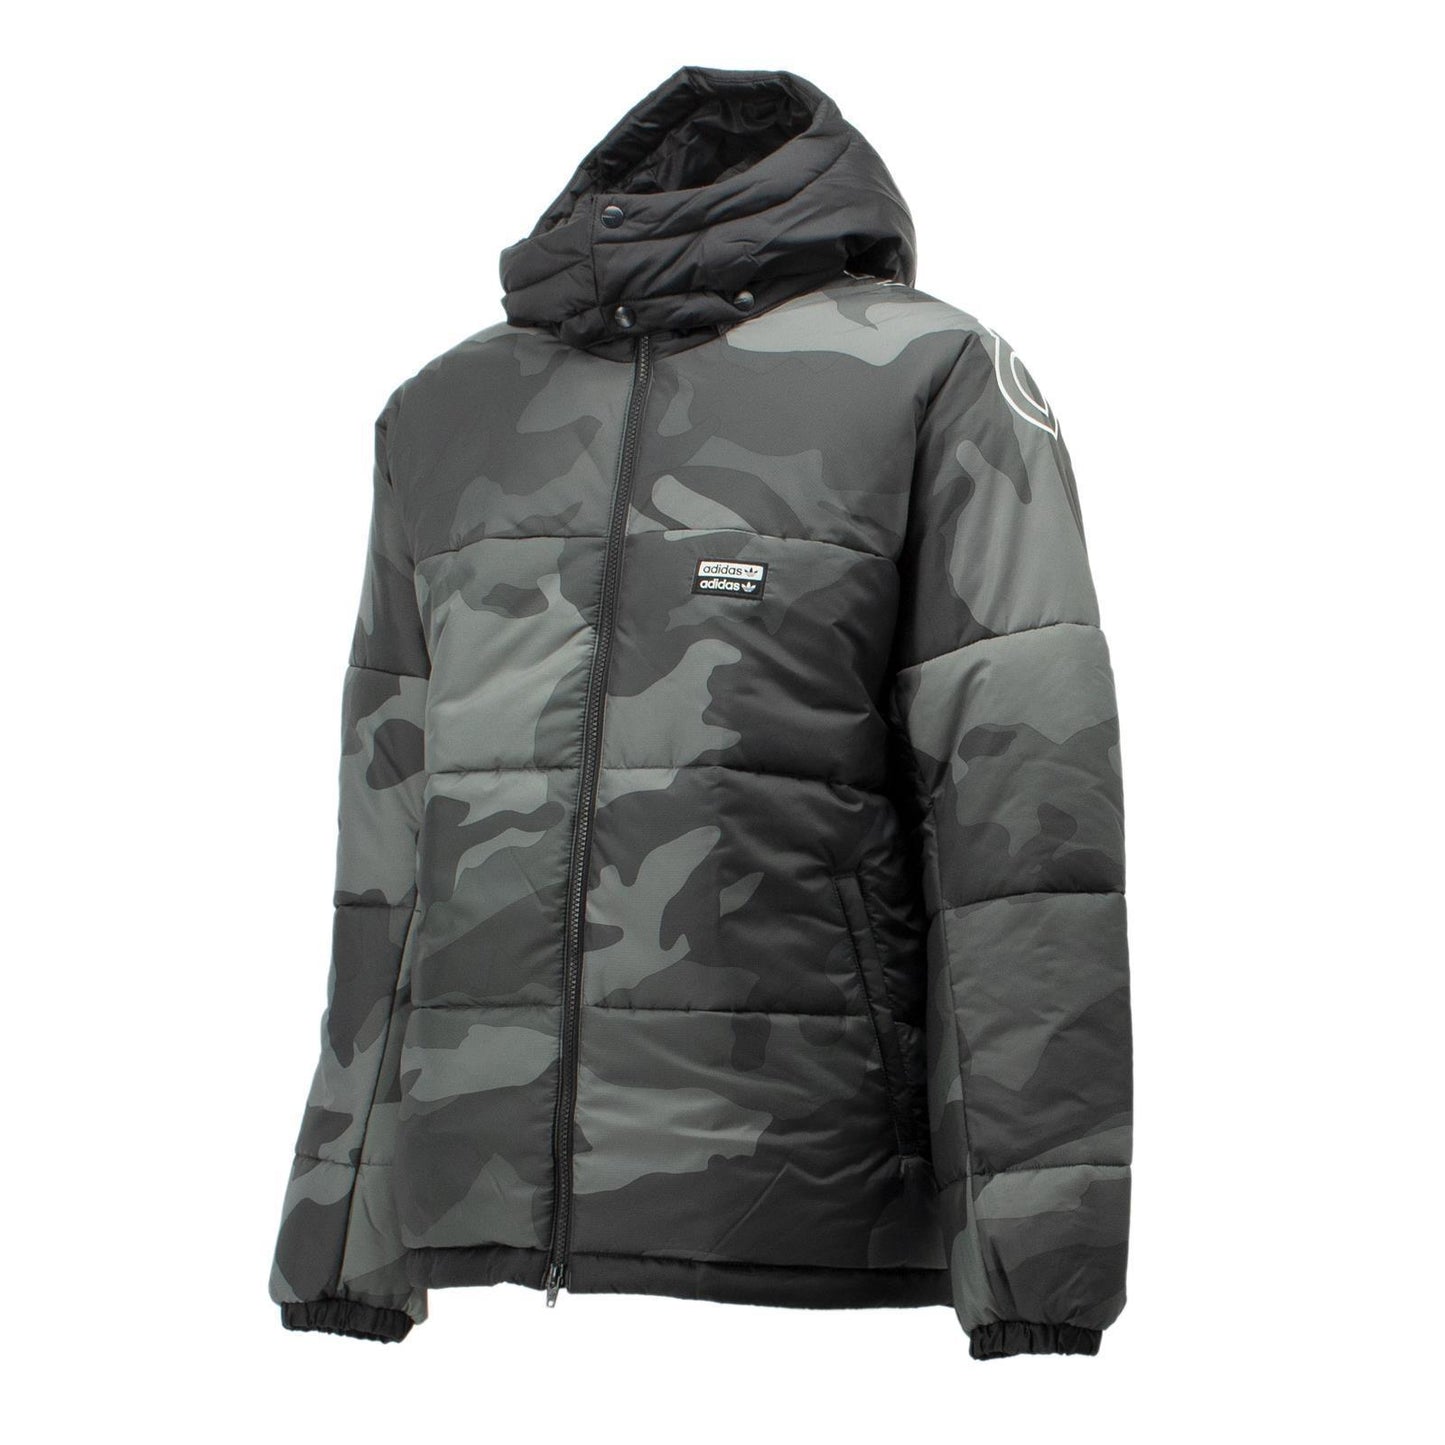 Adidas Originals R.Y.V. Camo camouflage Padded Winter Jacke Herren grau ED7183 M